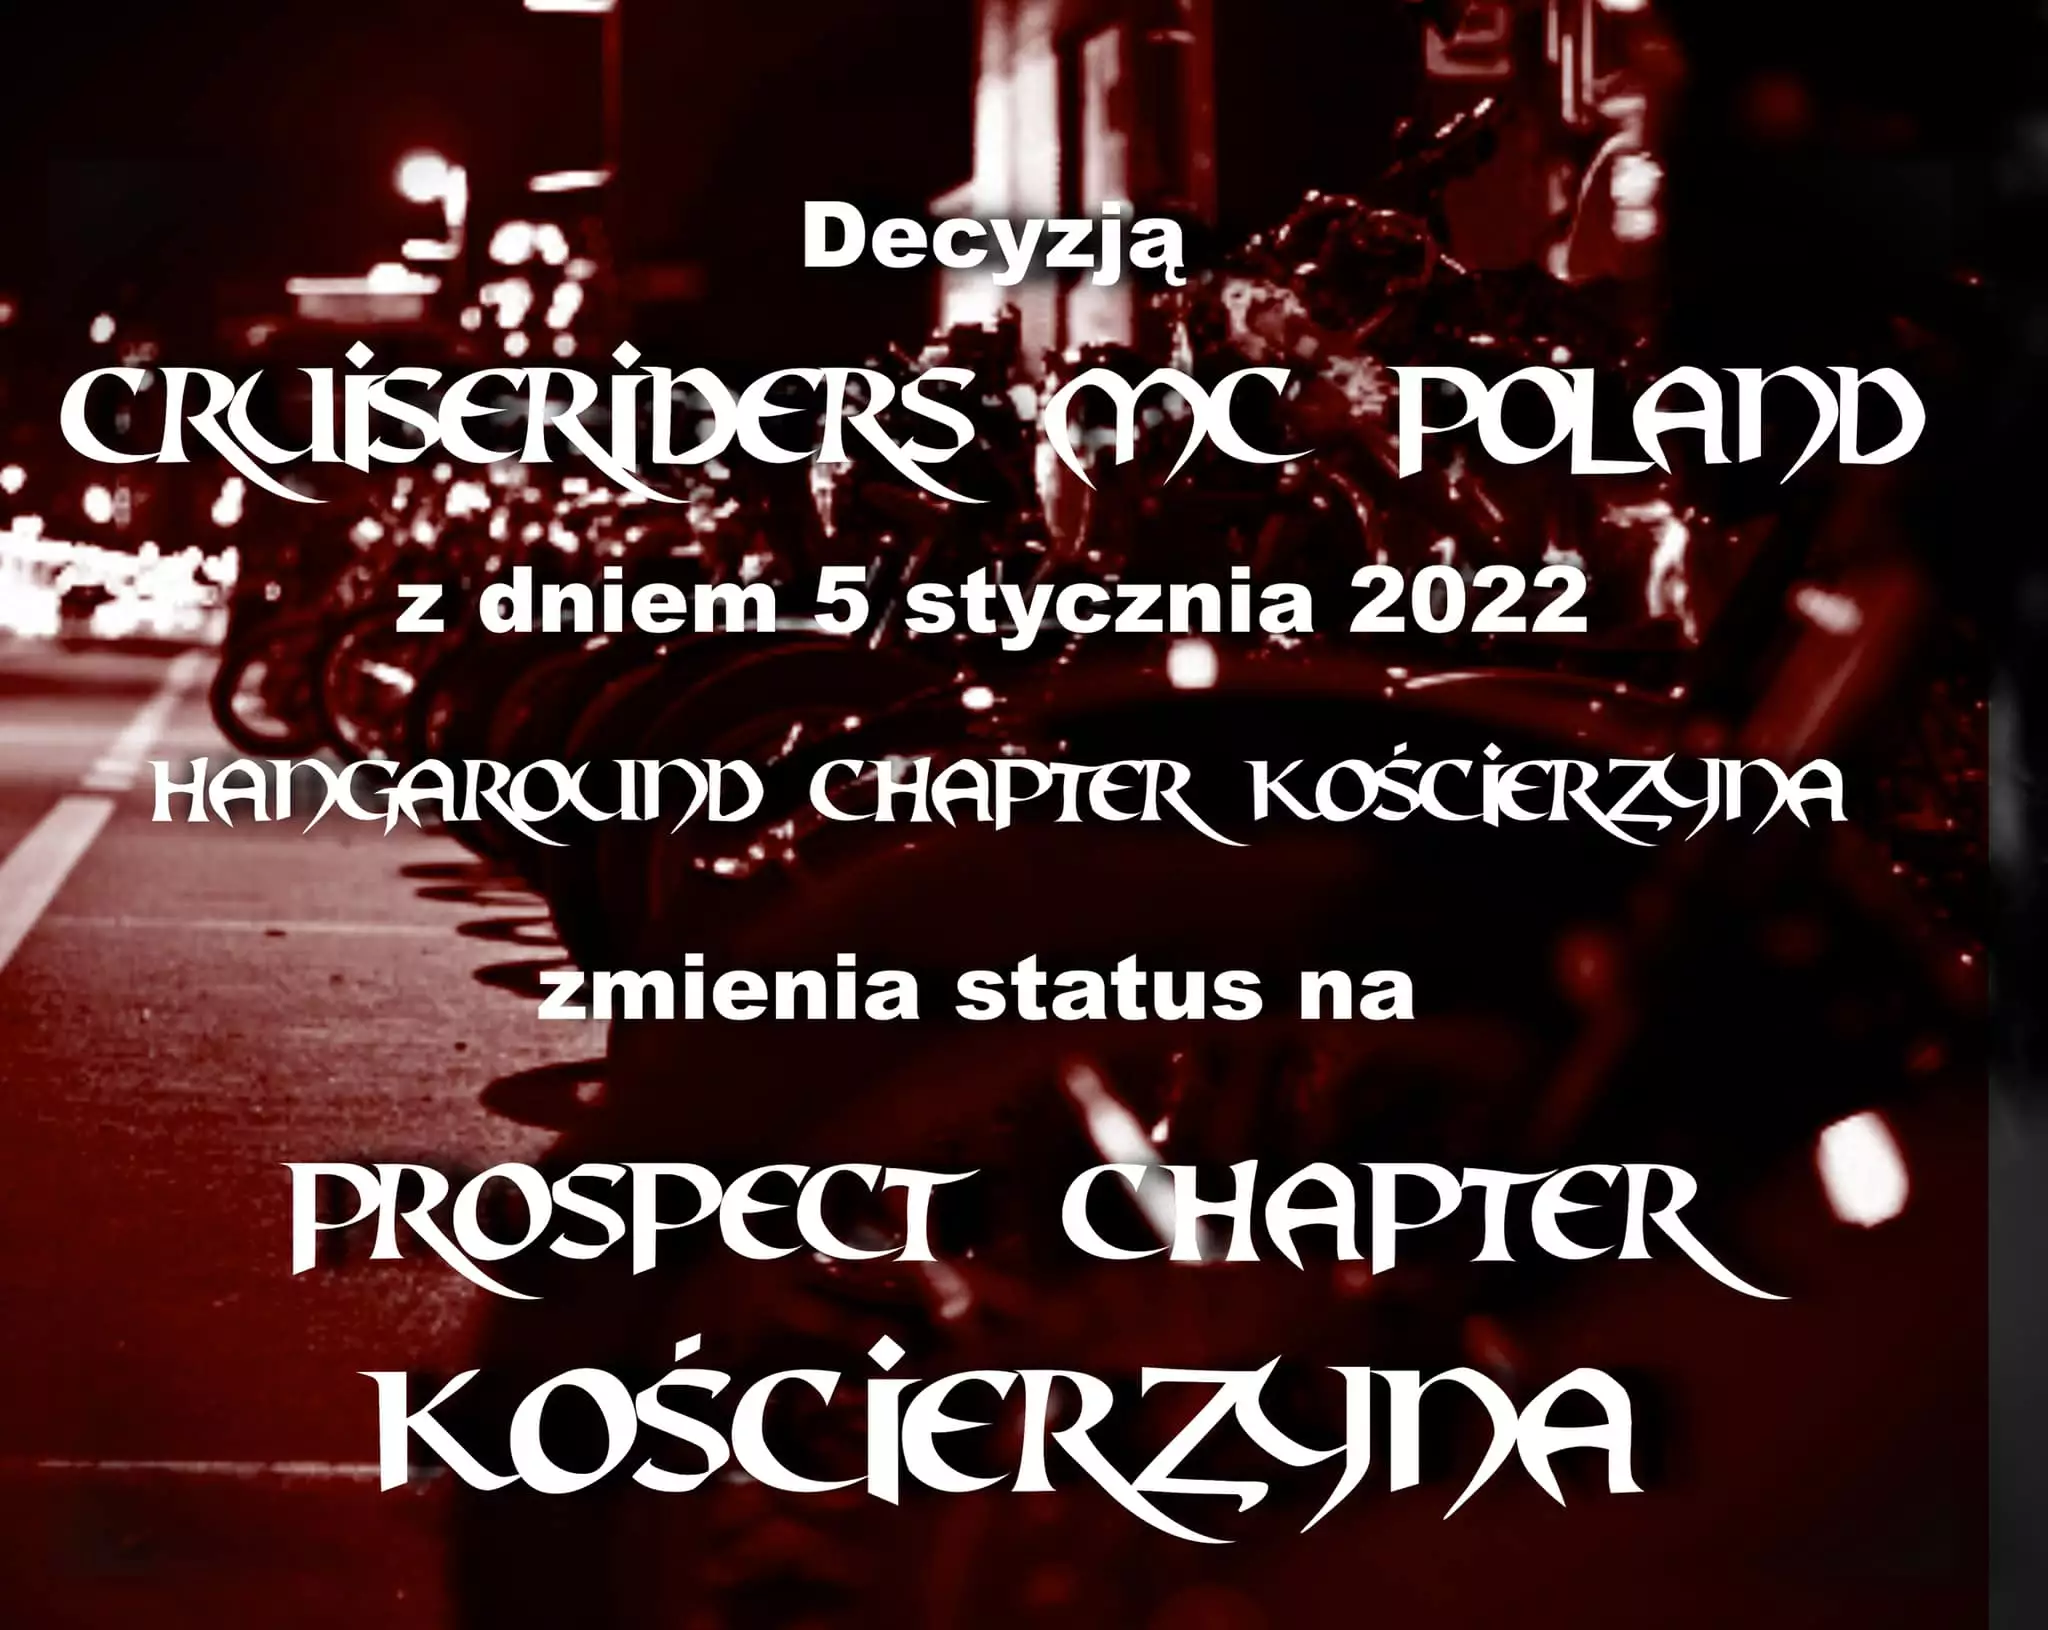 prospect_chapter_koscierzyna.jpg